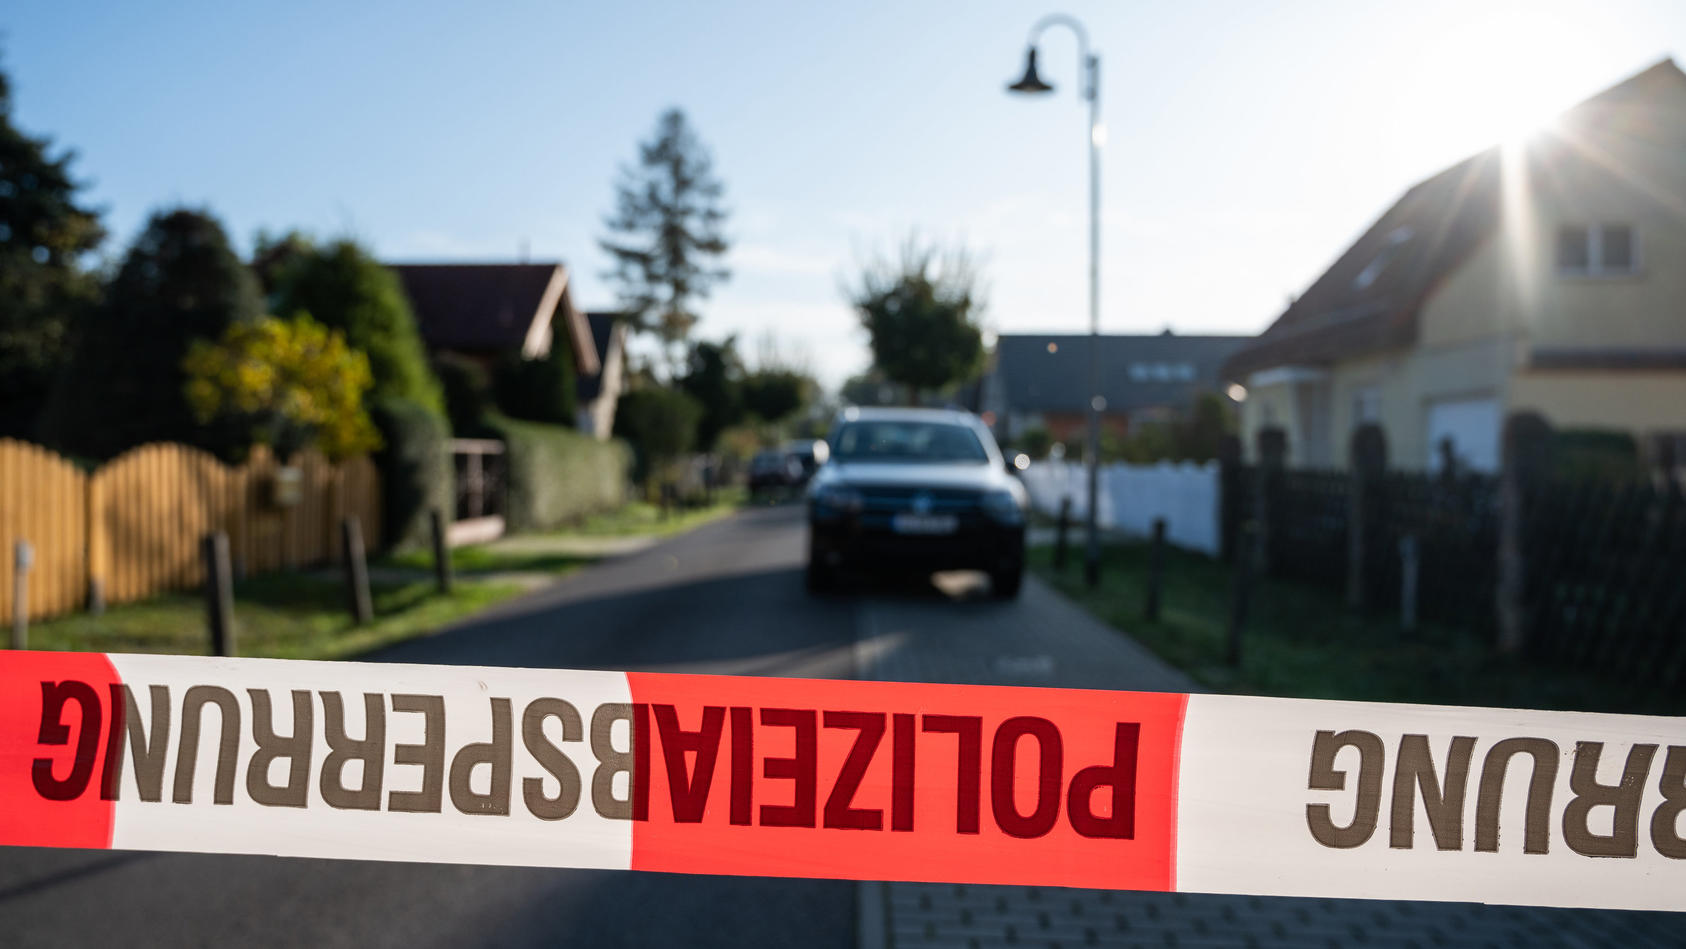 Frau stirbt nach Gewaltverbrechen in Teltow